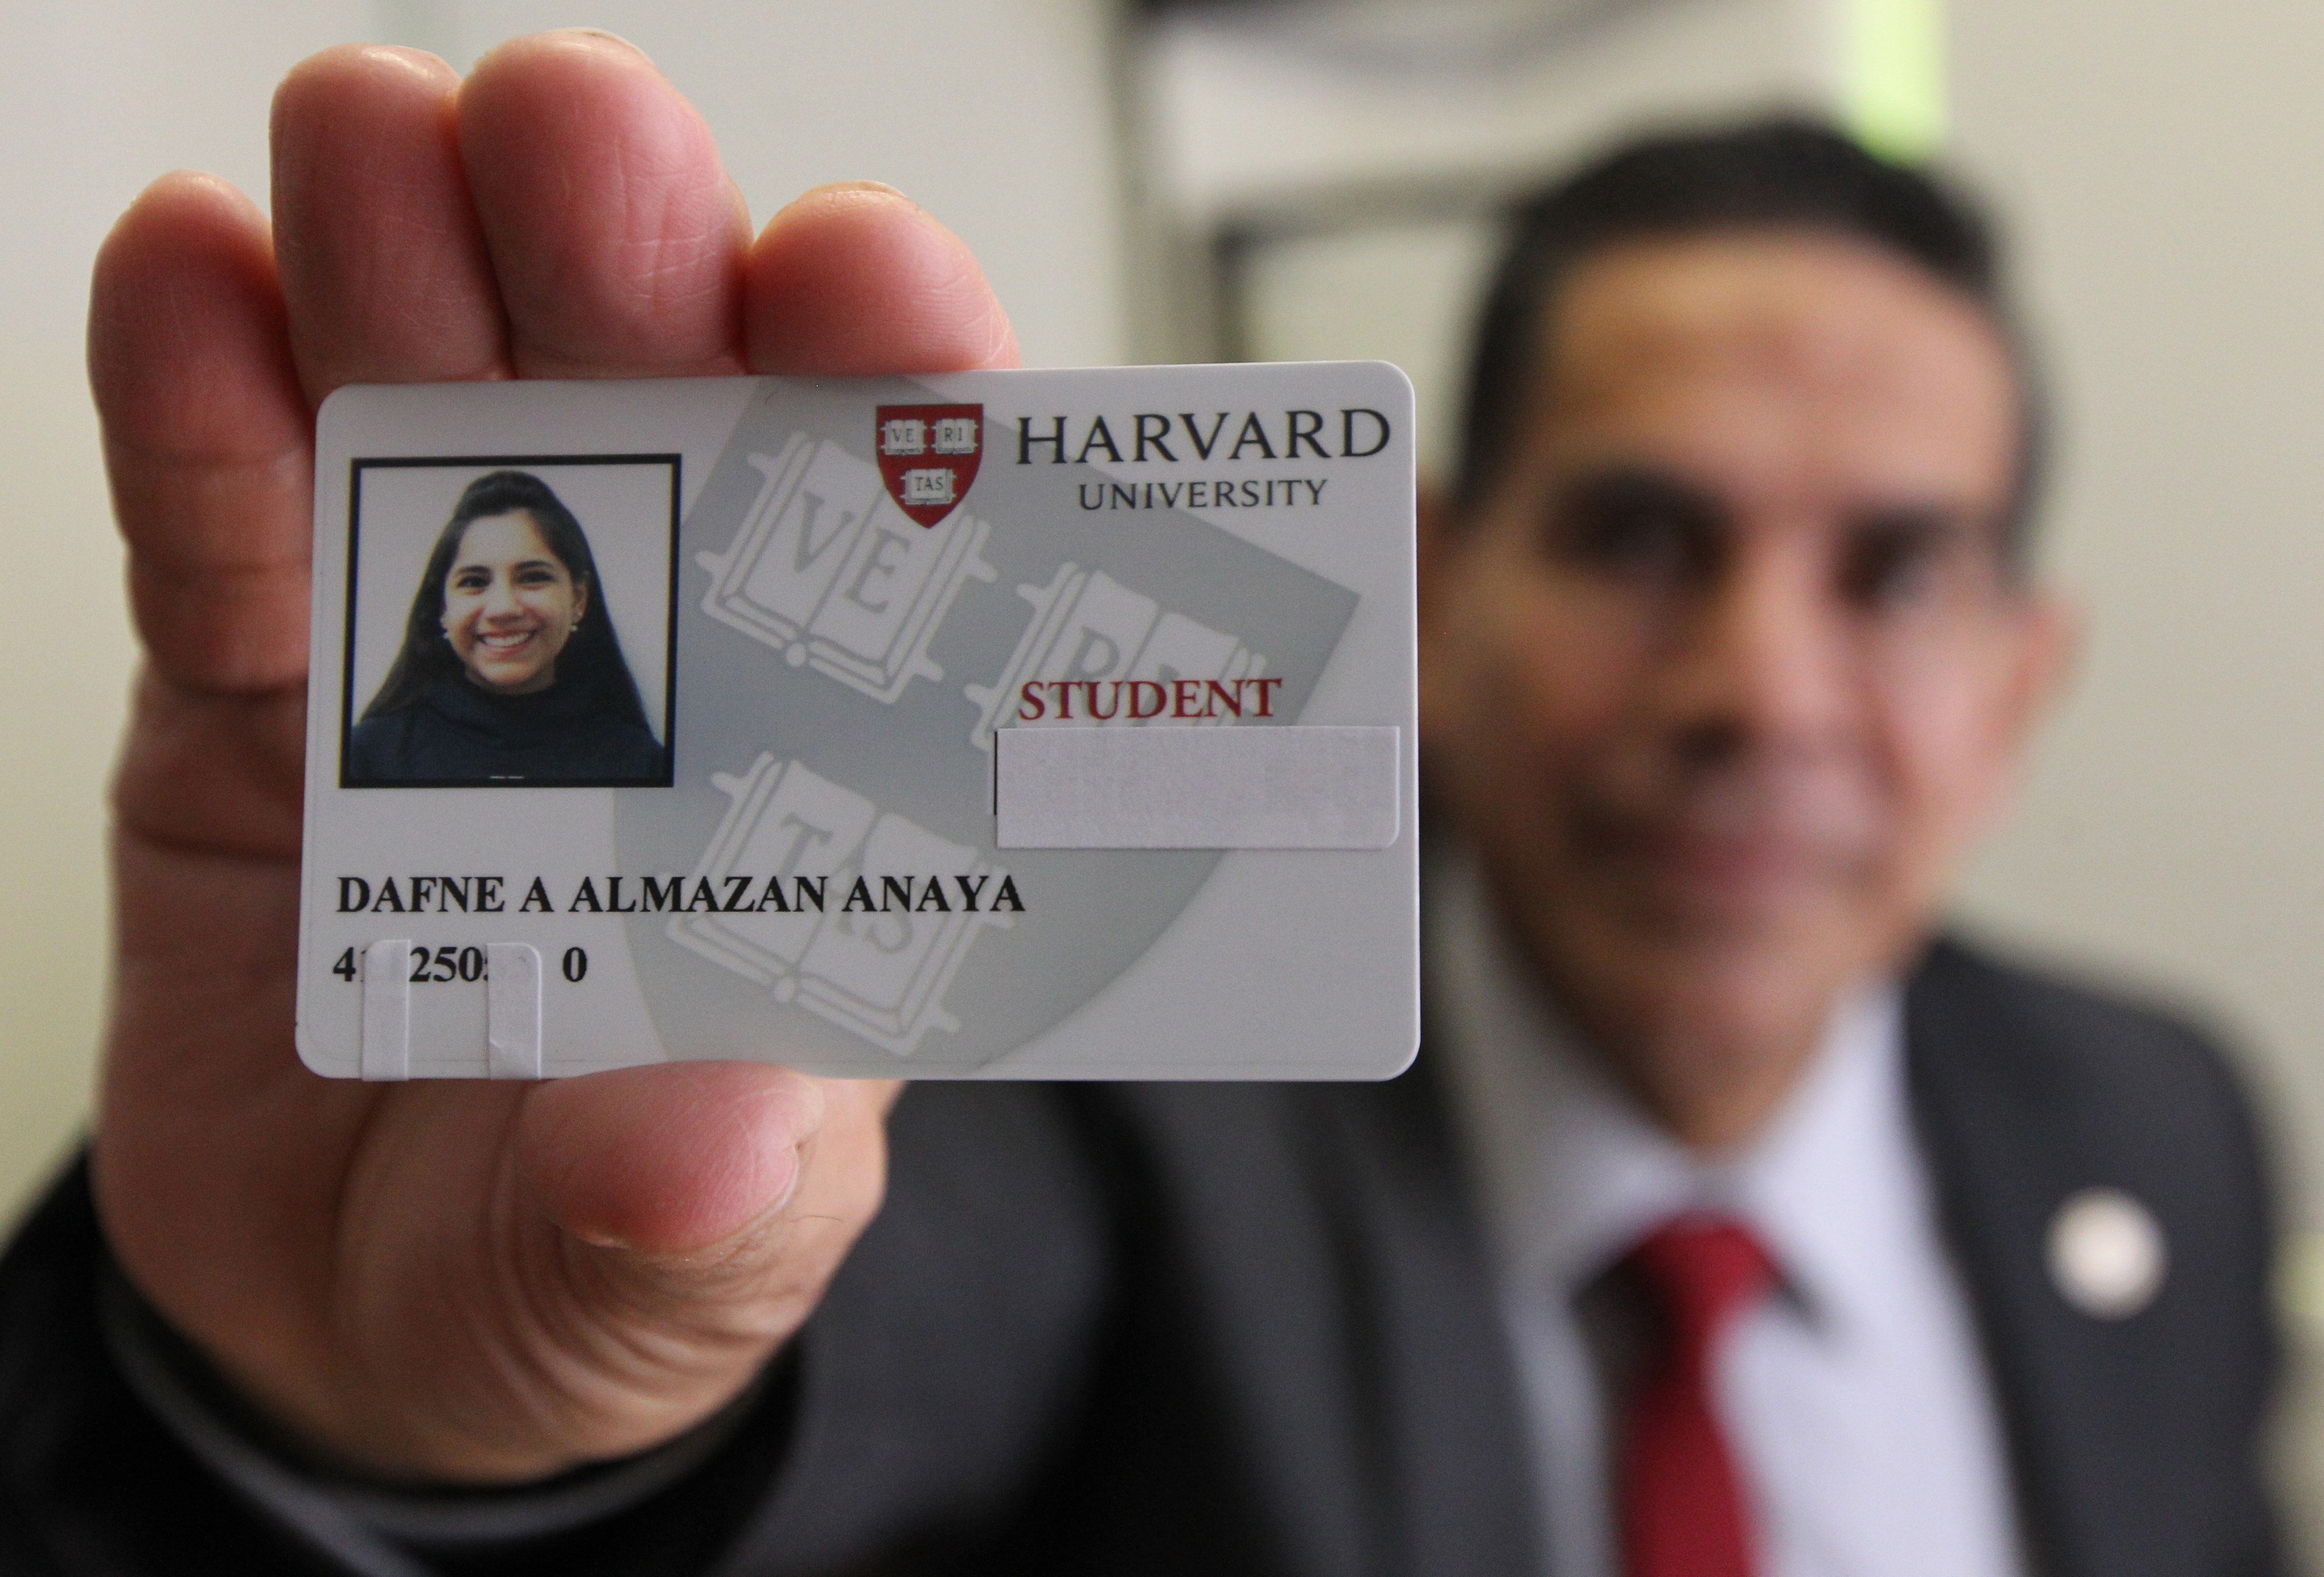 El doctor Asdrúbal Almazán, director del (Cedat) y padre de Dafne, muestra el carnet de alumna de Harvard de su hija. / Foto: EFE